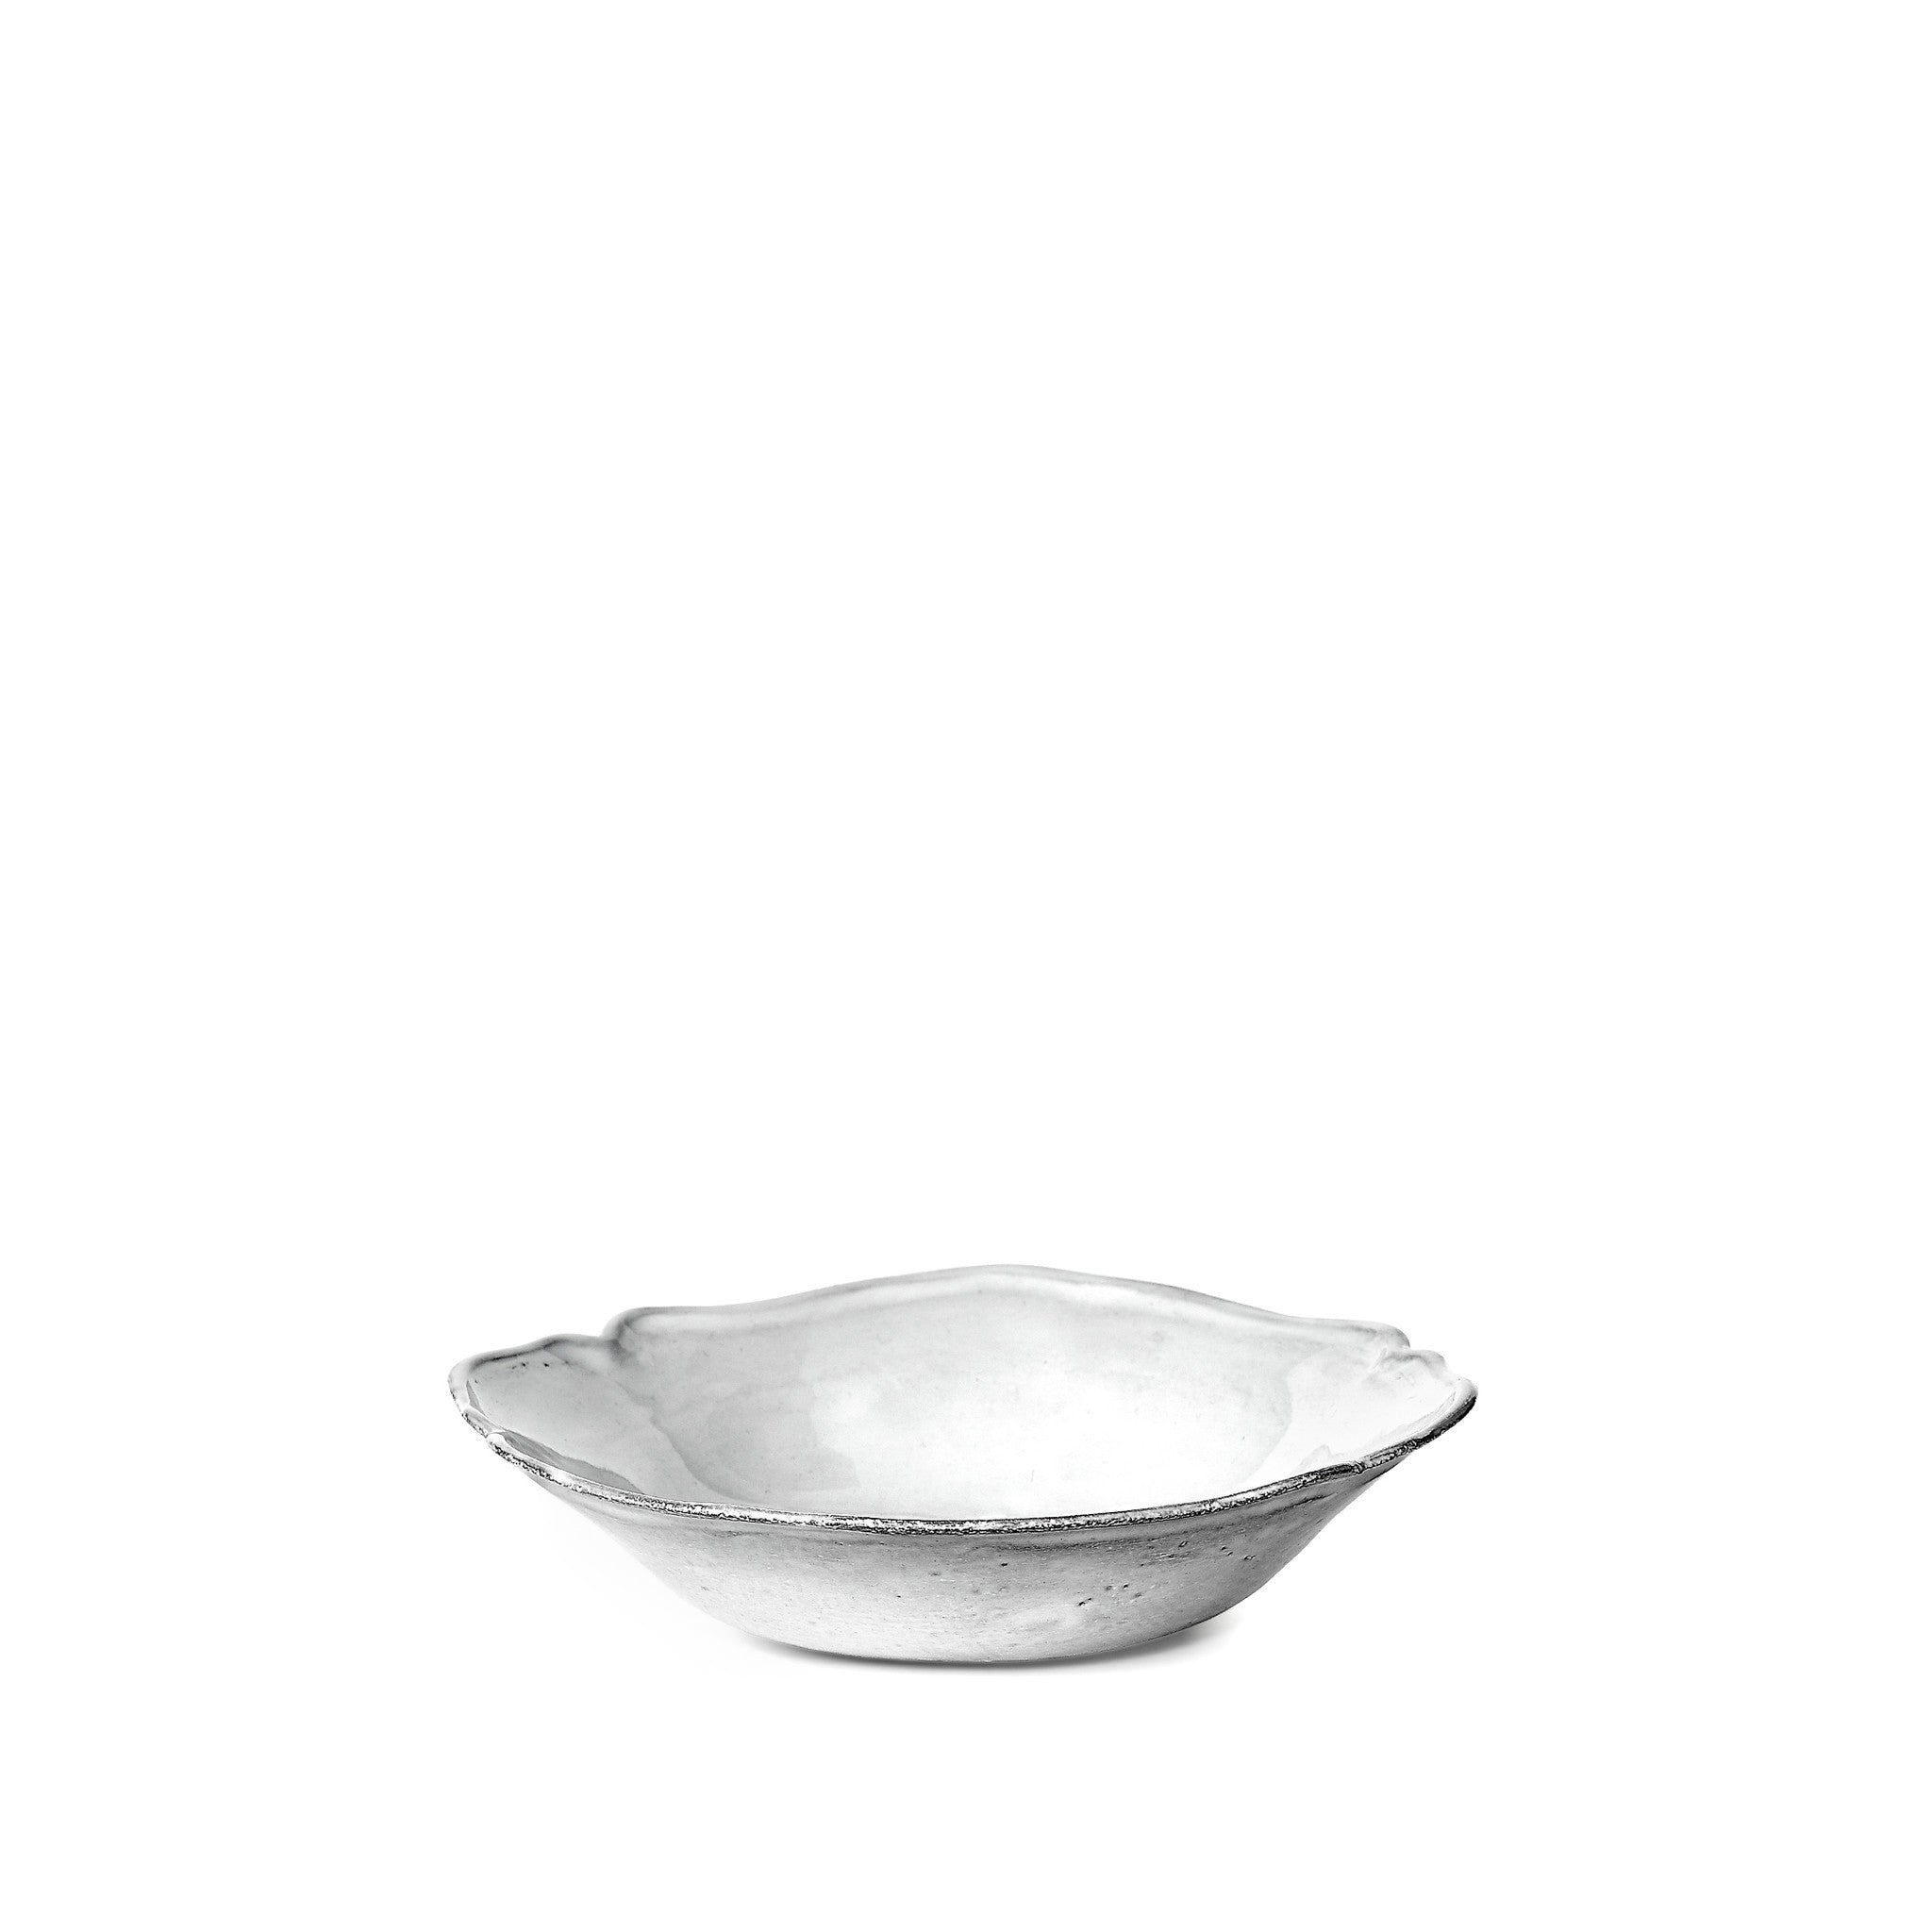 Bac Small Soup Bowl by Astier de Villatte, 19cm